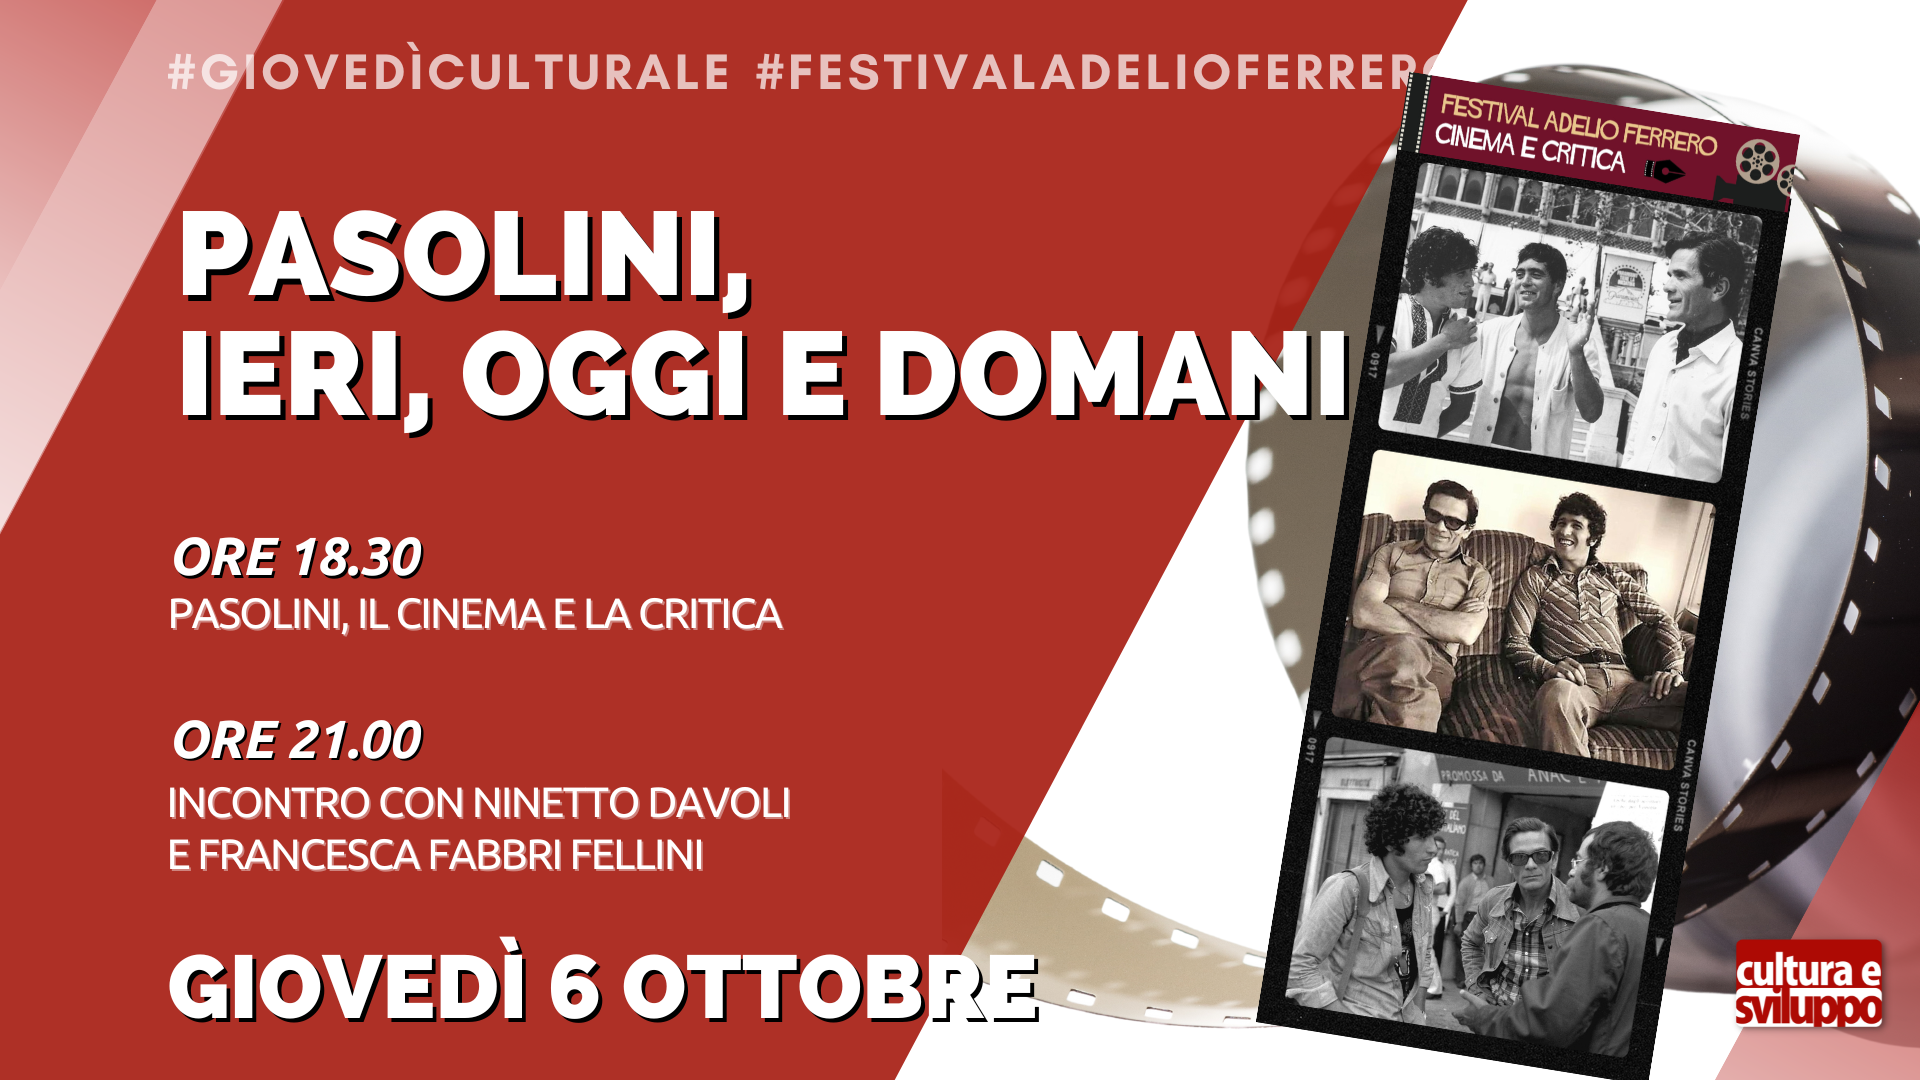 Festival Adelio Ferrero Cinema e Critica: Pasolini, ieri, oggi e domani